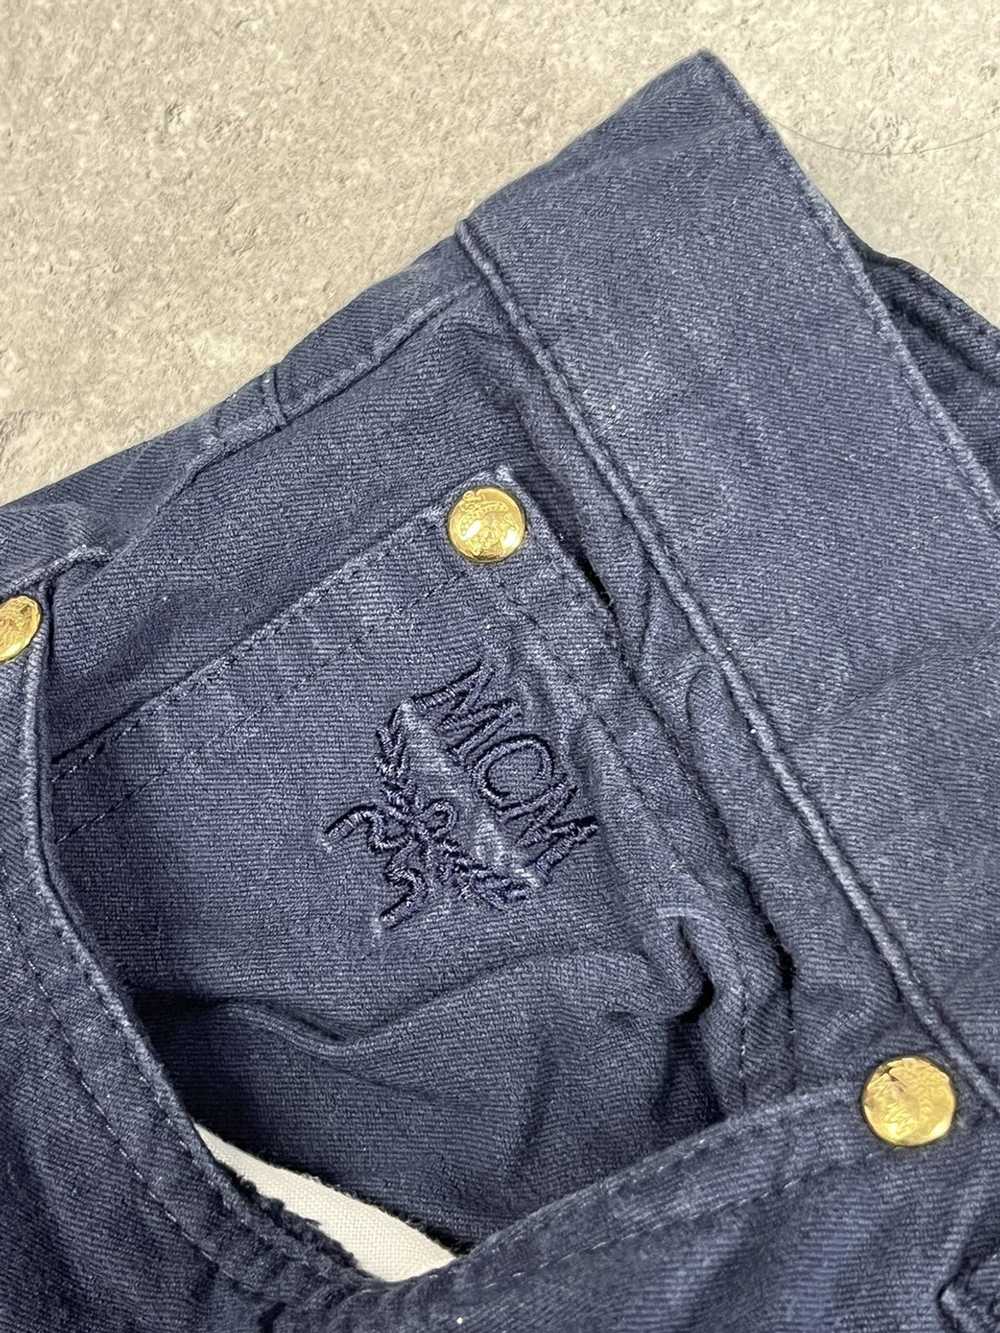 Designer × MCM × Vintage MCM navy jeans vintage 9… - image 8